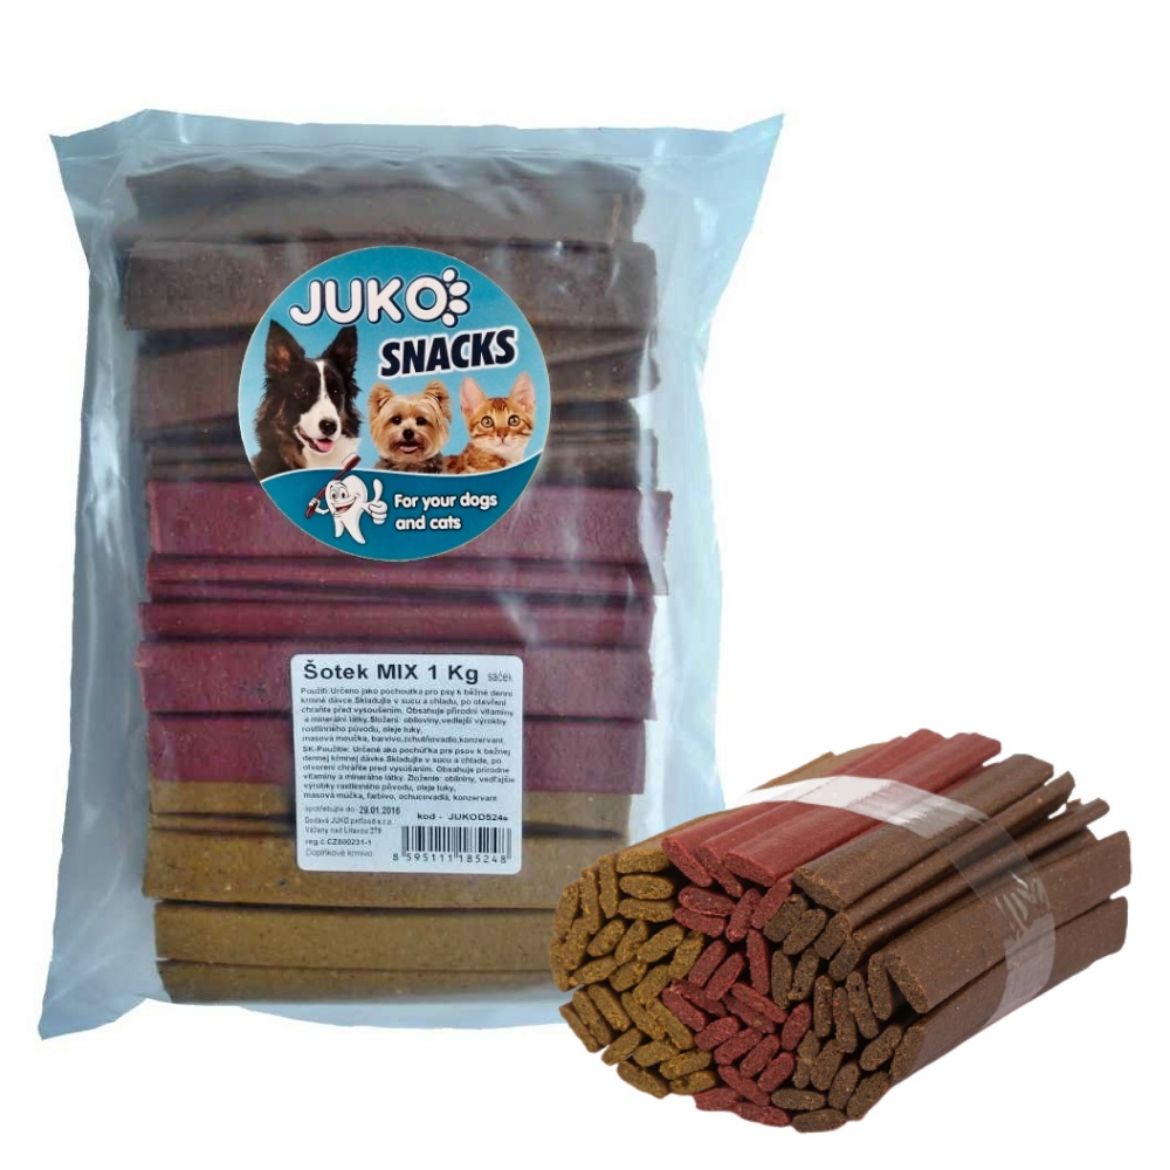 Obrázek z Šotek MIX JUKO Snacks 1 kg (cca 120 - 138 ks) 